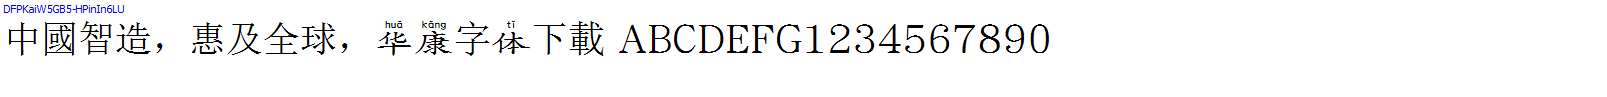 華康字體DFPKaiW5GB5-HPinIn6LU.TTF